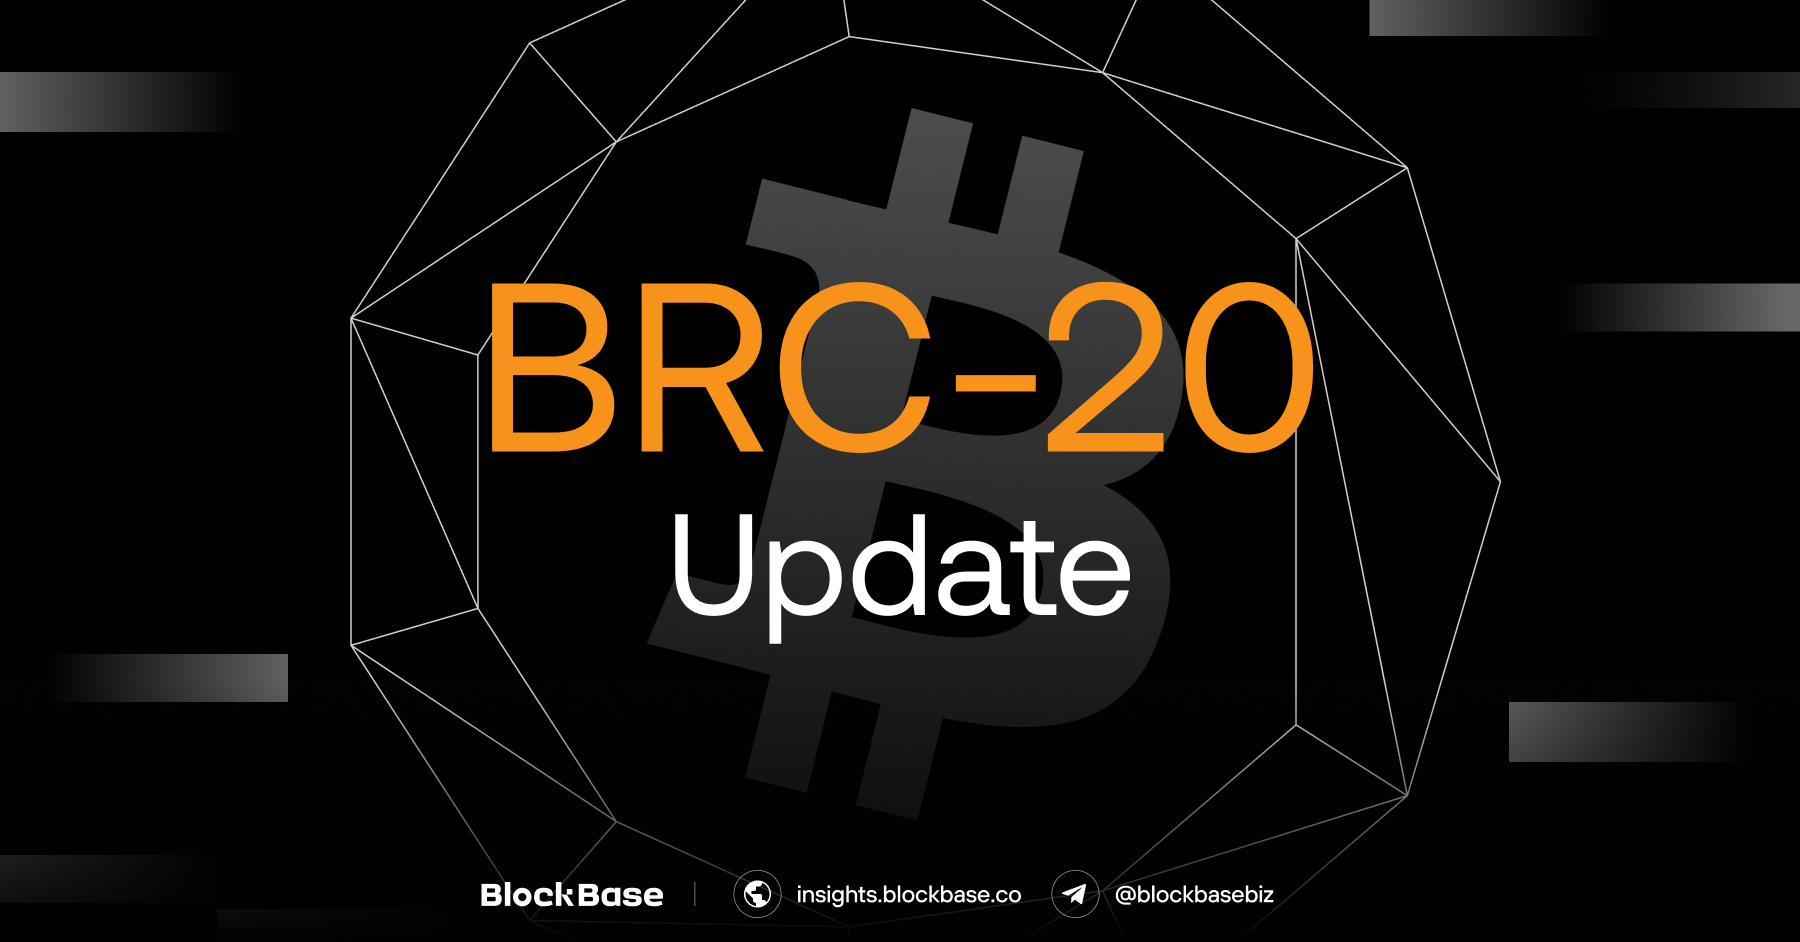 BRC-20 Update